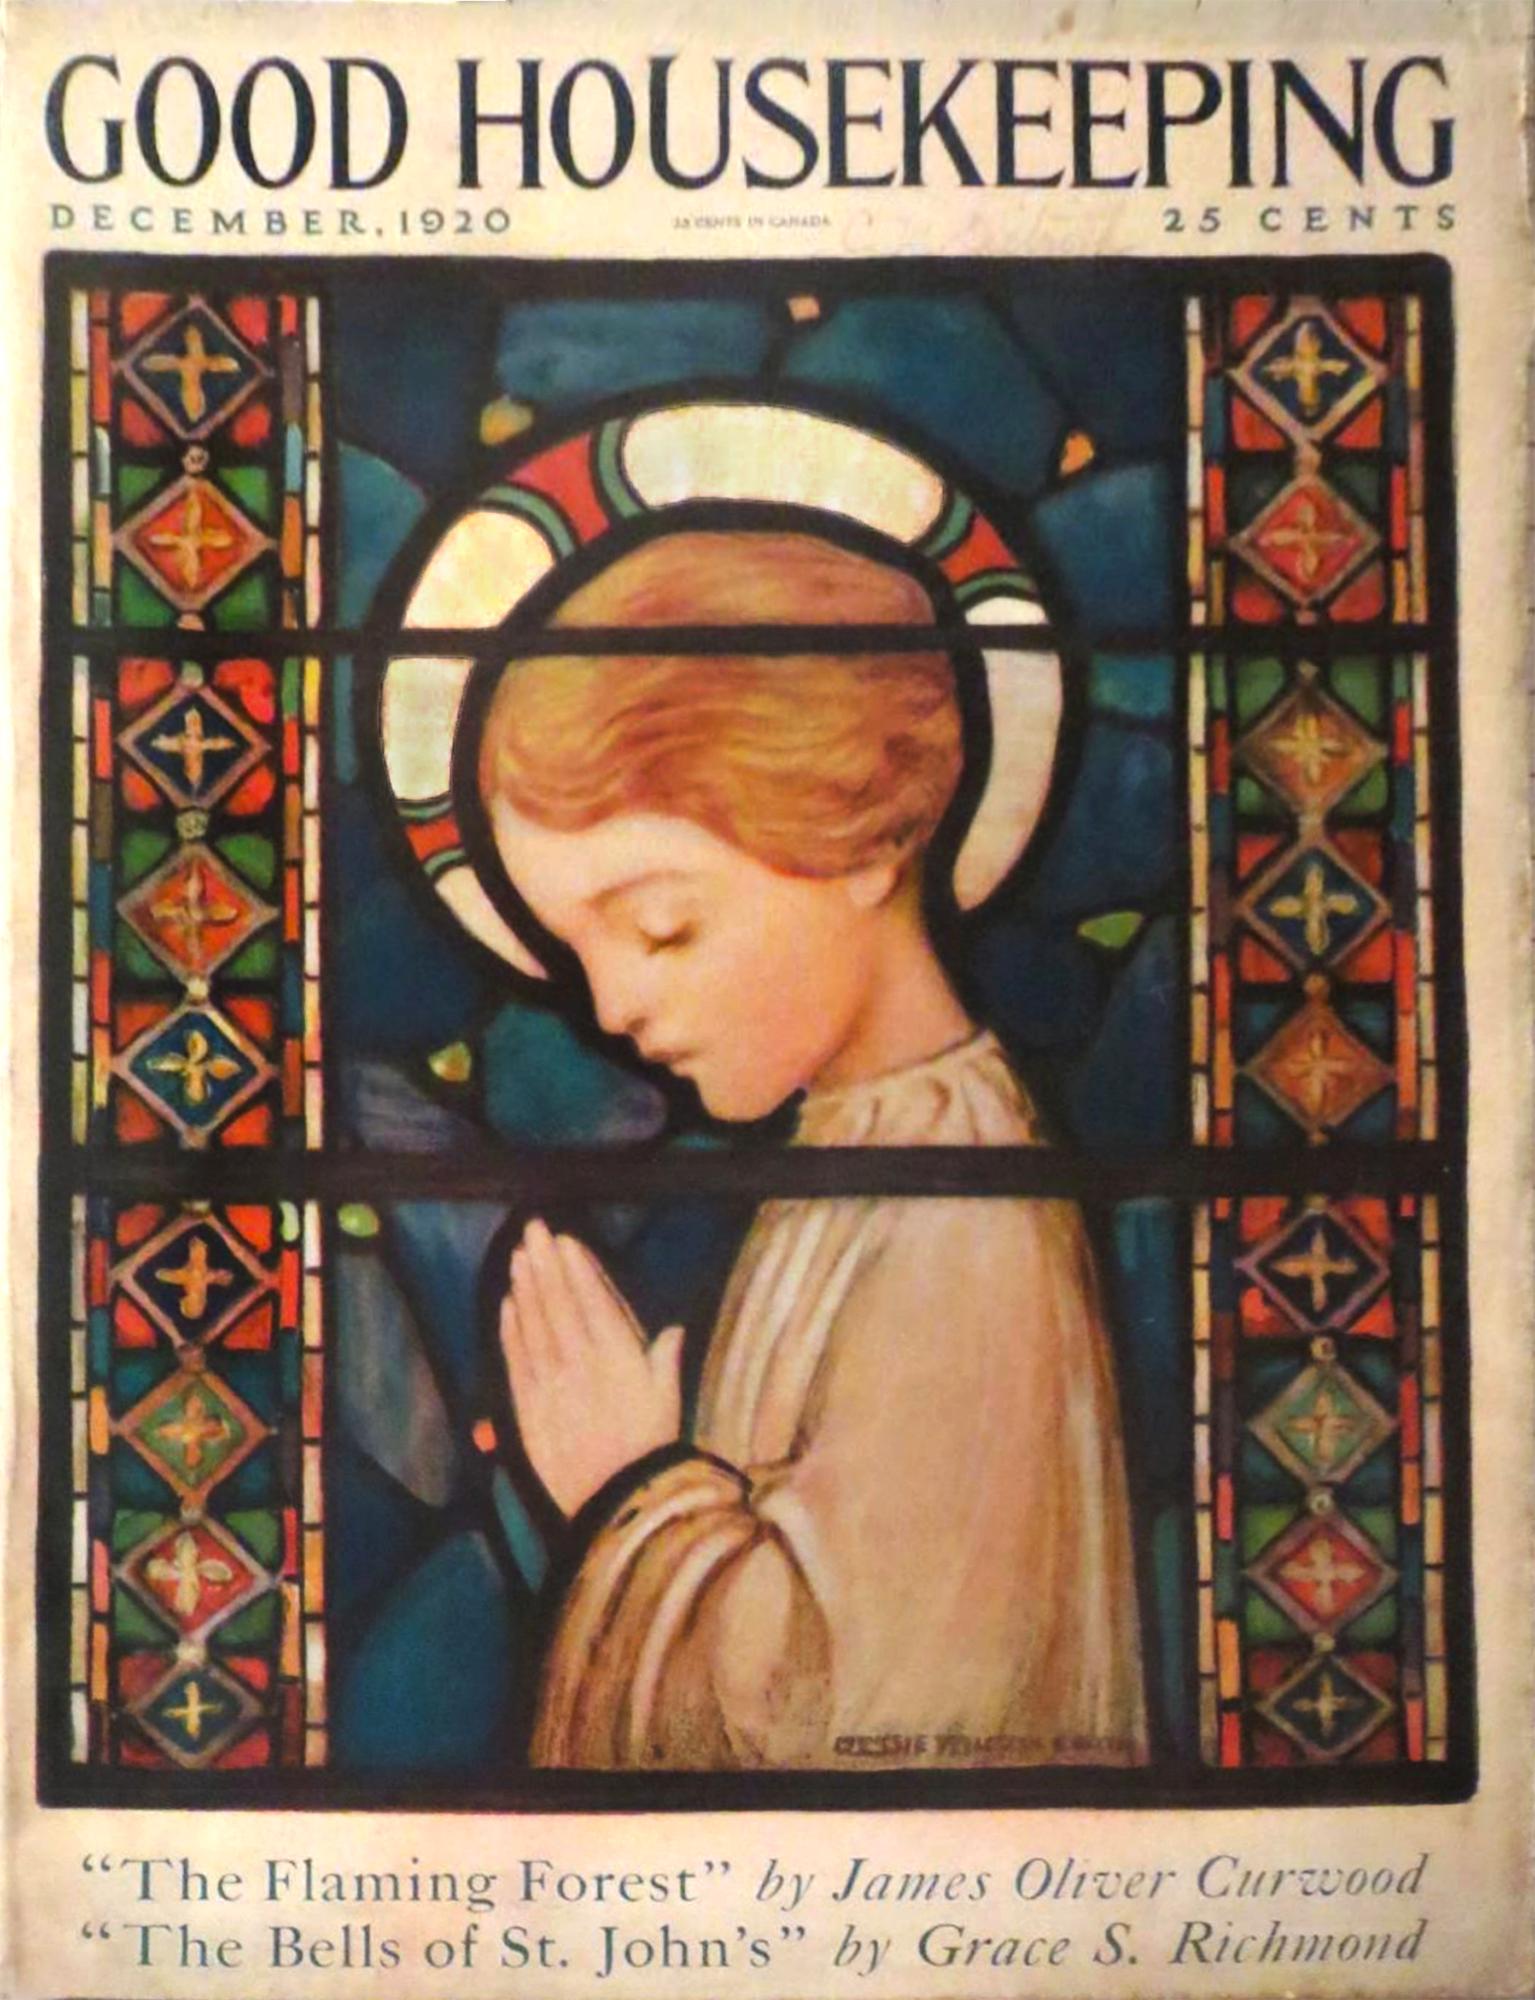 L'enfant en prière  Couverture de Good Housekeeping Magazine - Painting de Jessie Wilcox Smith